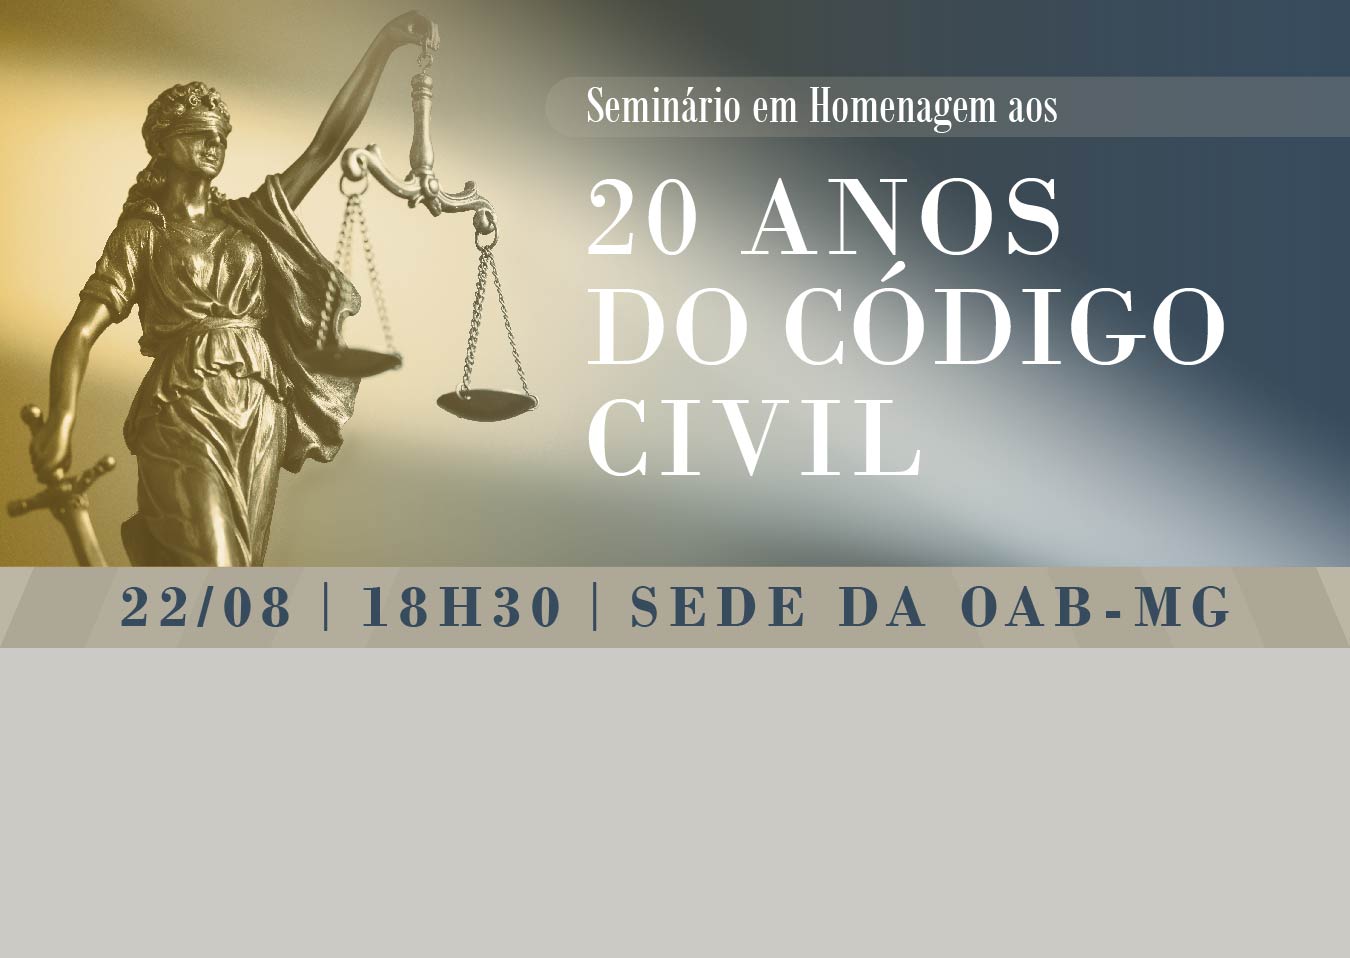 Seccional Mineira realiza evento sobre direito constitucional a moradia